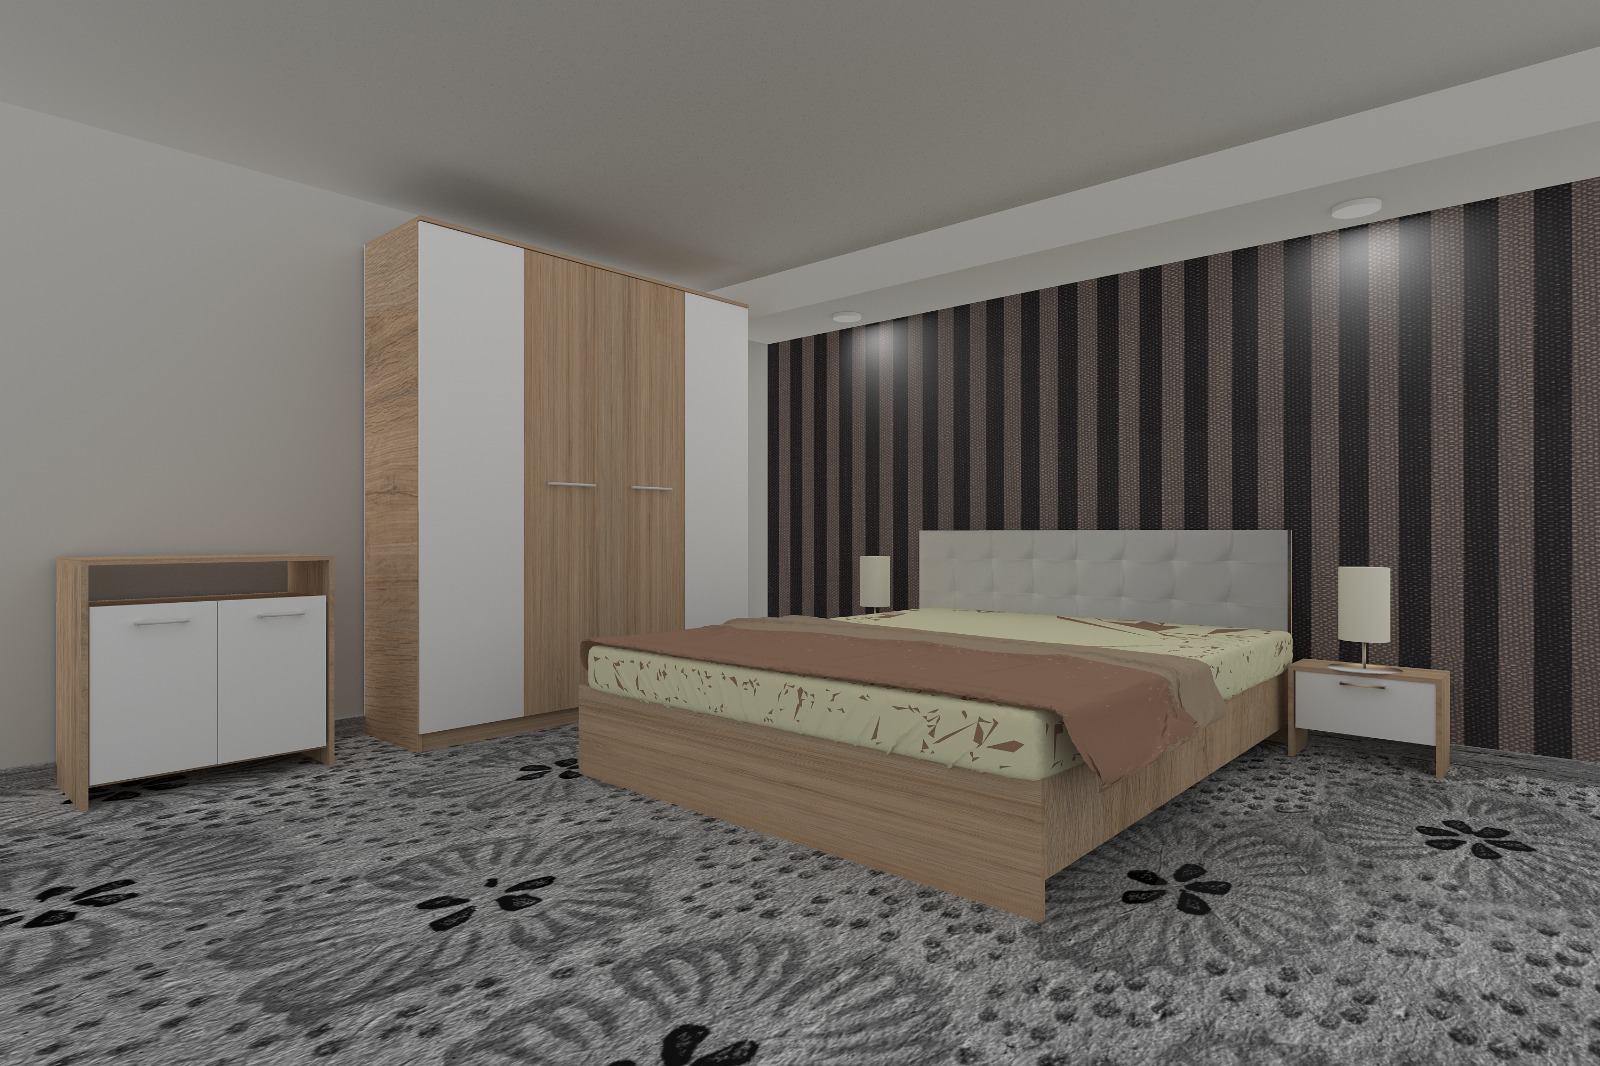 Dormitor Luiza 4U5PTA, culoare sonoma / alb, cu pat tapiterie alba 160 x 200, dulap cu 4 usi 164 cm, comoda si 2 noptiere